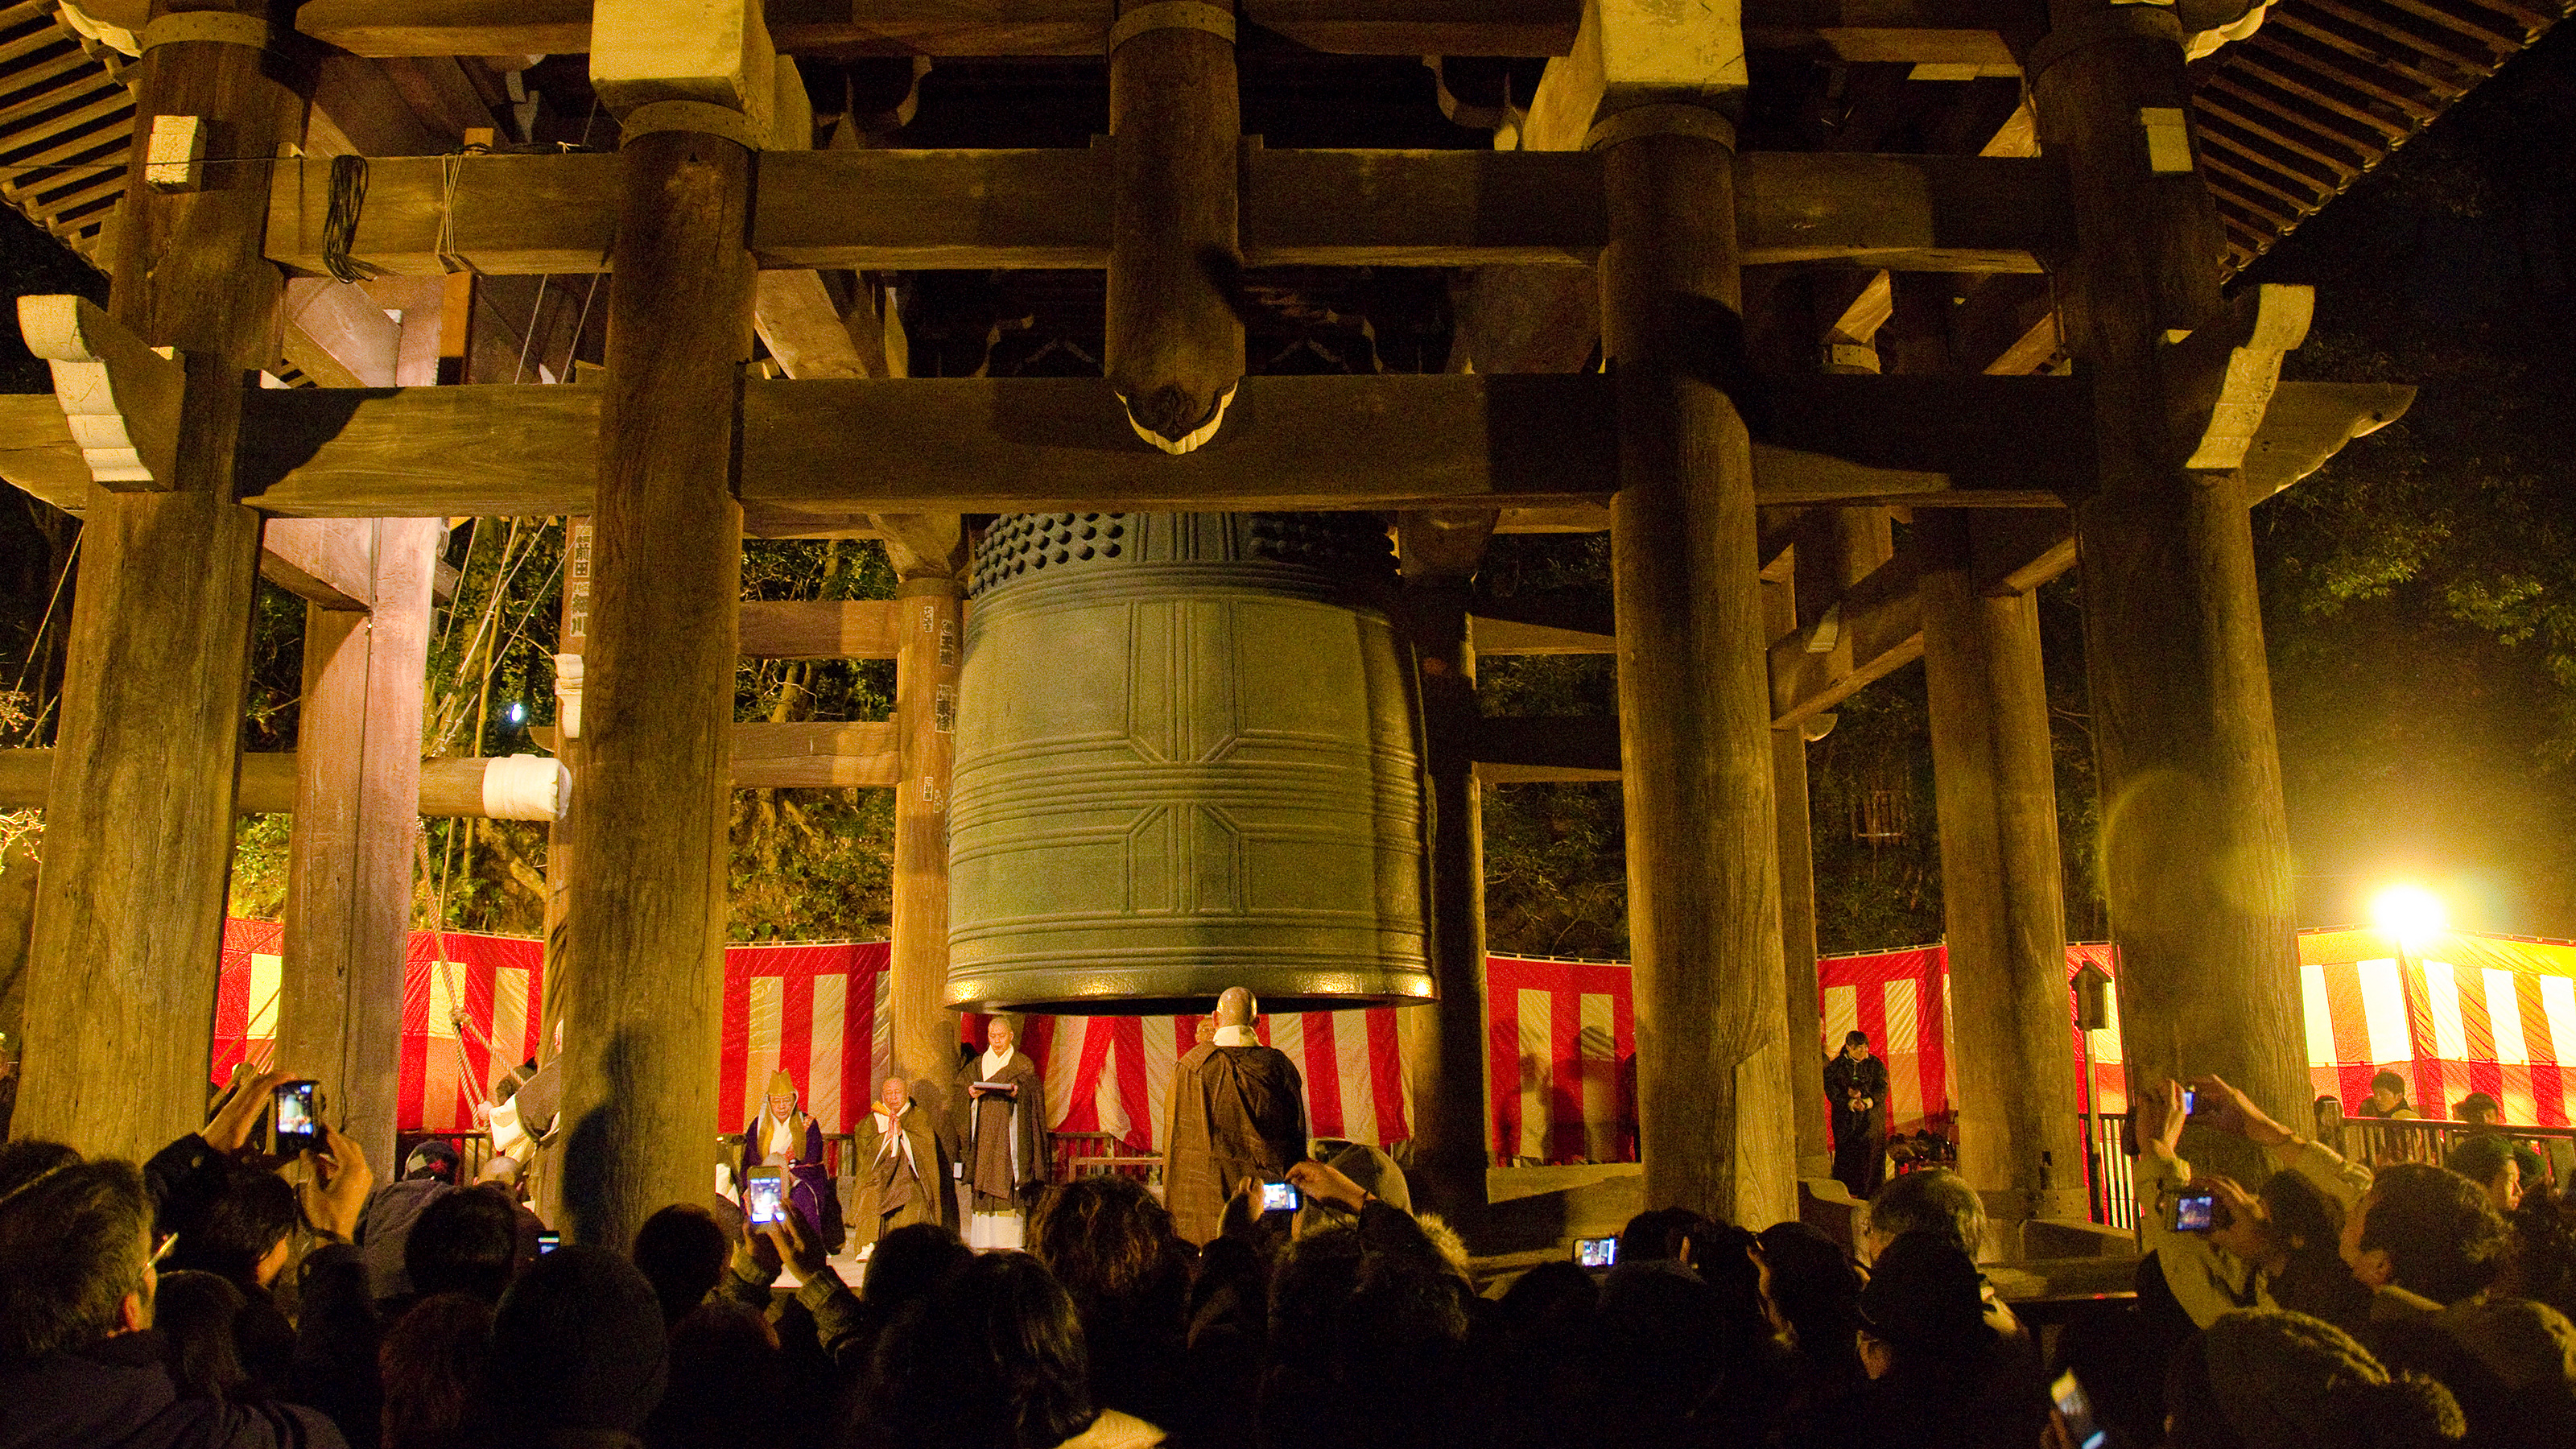 Vào đêm giao thừa, "Joya no Kane" - nghi thức rung chuông chùa, vang vọng khắp đất nước, tượng trưng cho việc rũ bỏ những điều xui xẻo của năm trước và chào đón một khởi đầu mới.